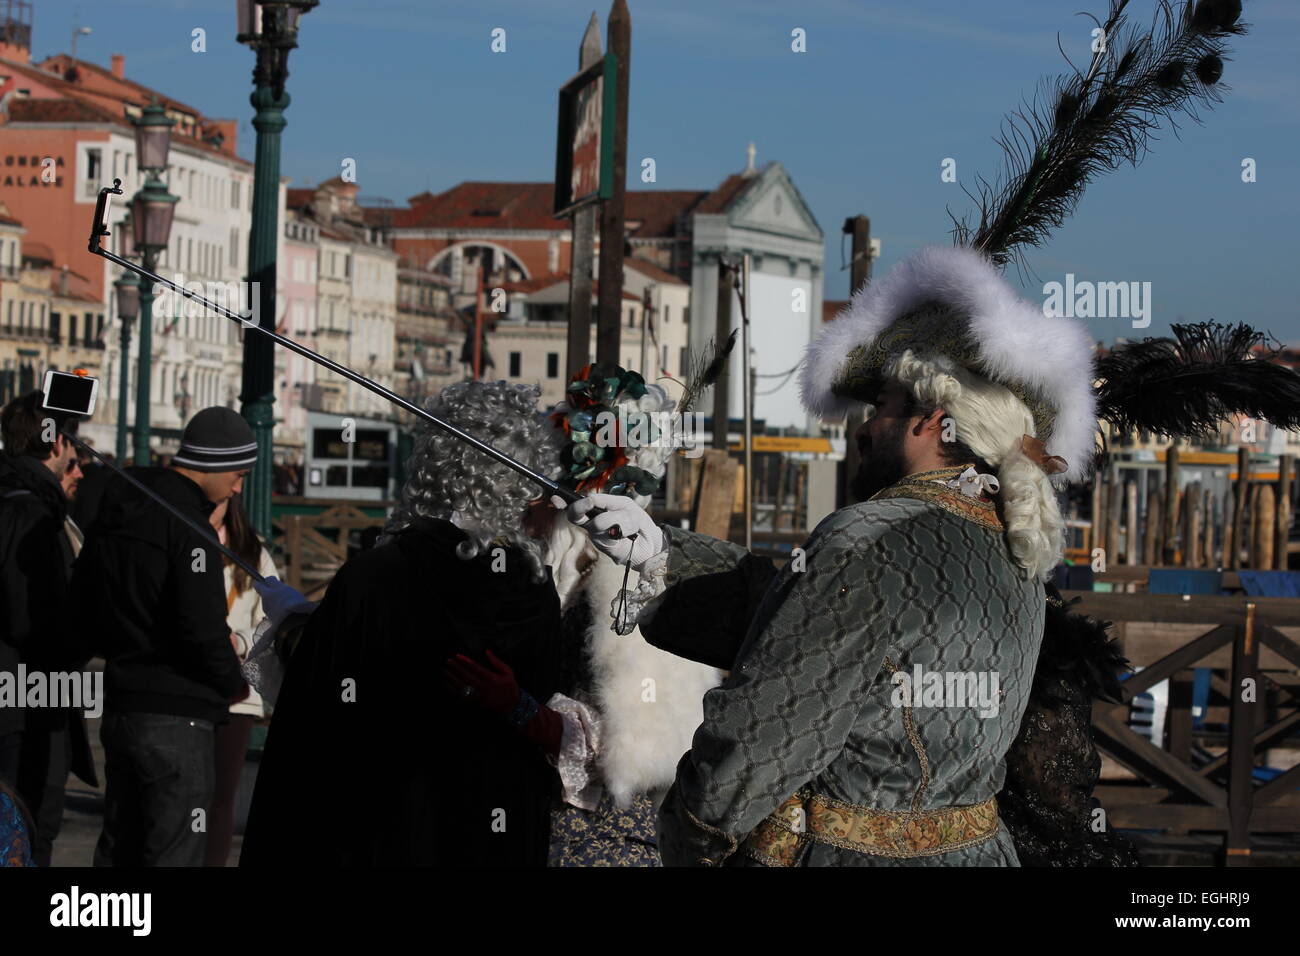 Carnival selfie Venice carnival costumes Stock Photo